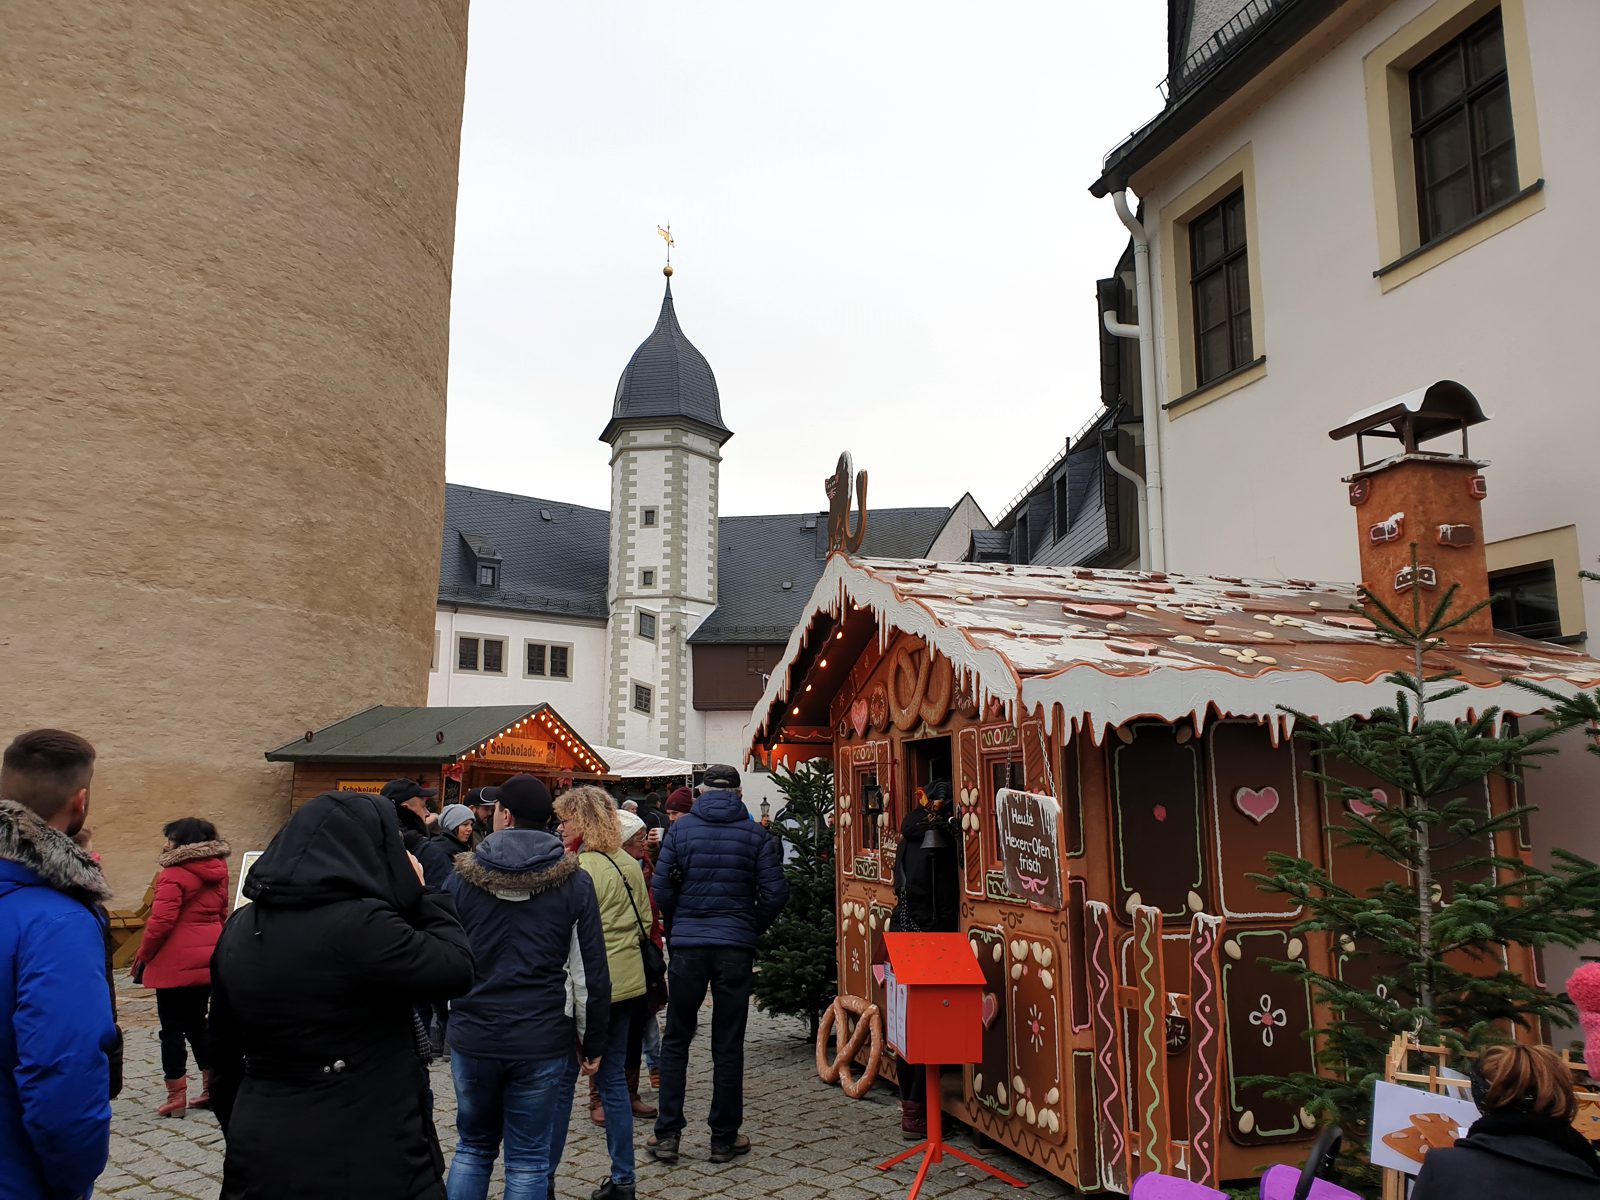 Zschopauer Weihnachtsmarkt auf Schloï¿½ Wildeck